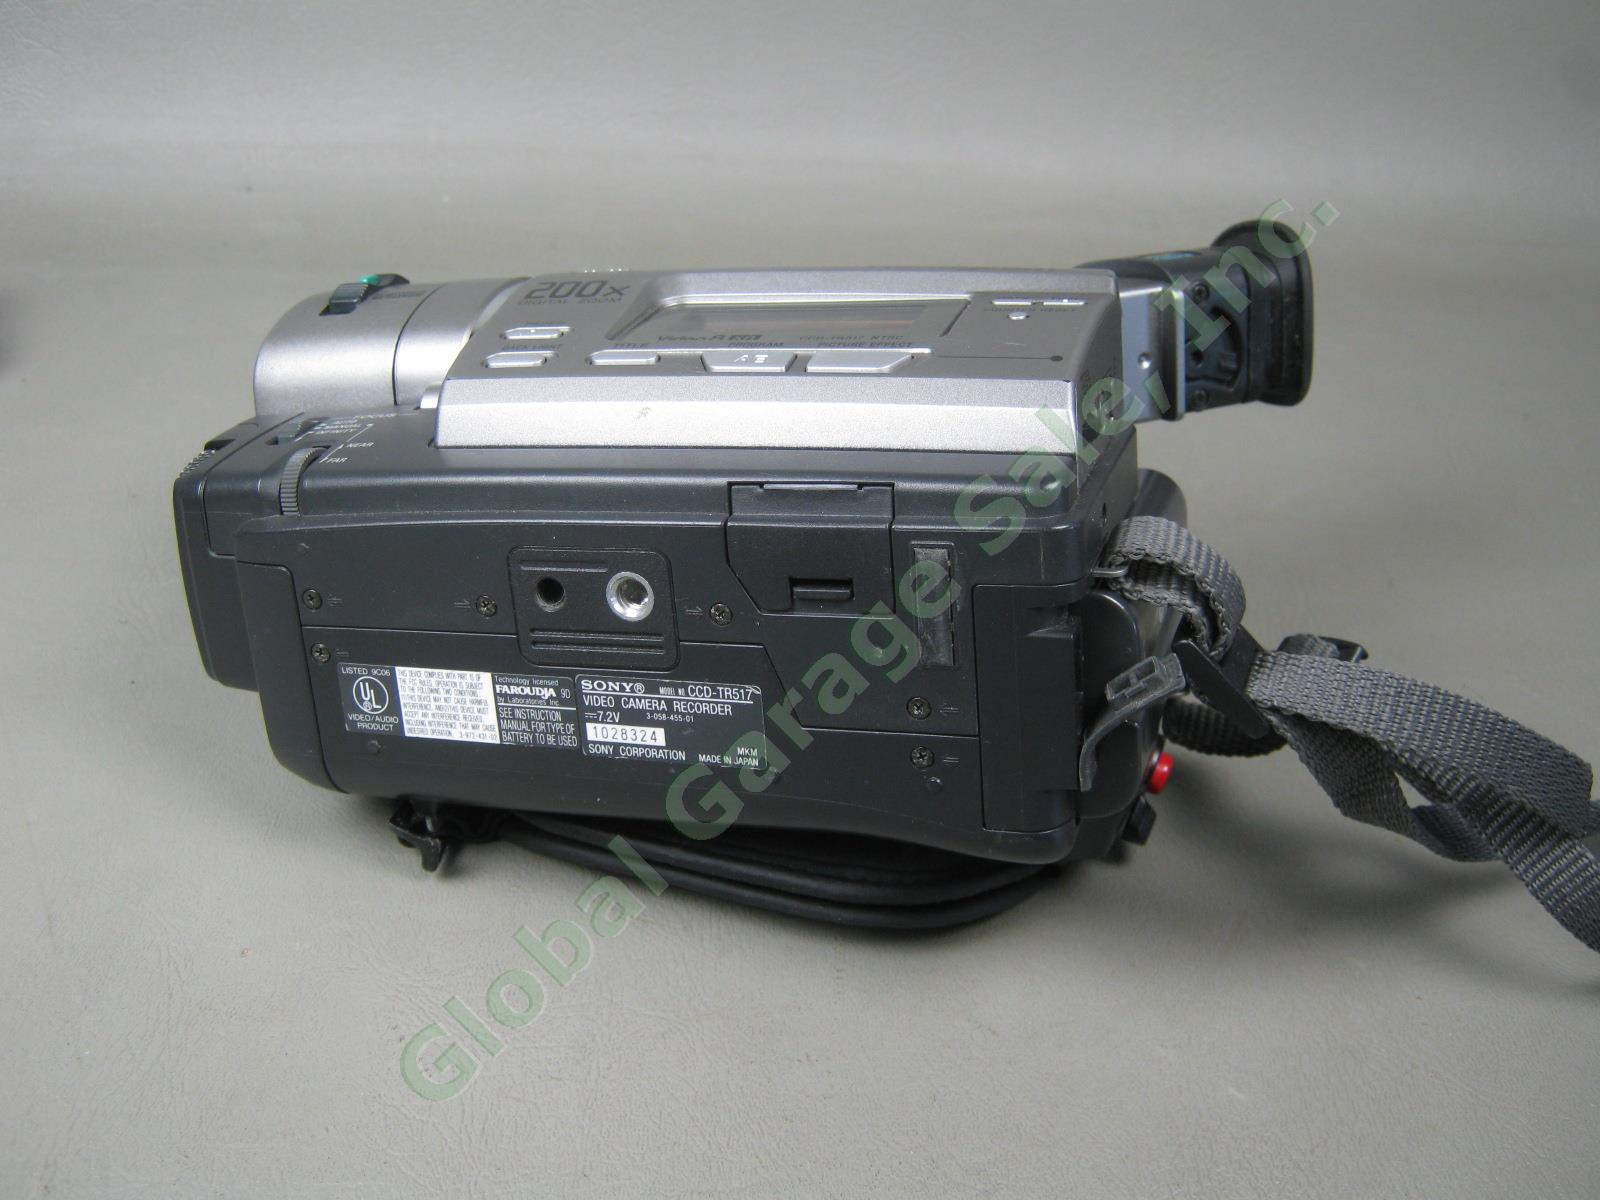 Sony HandyCam CCD-TR517 XR NTSC Hi 8 8mm Video Transfer Camcorder Bundle Lot NR! 7